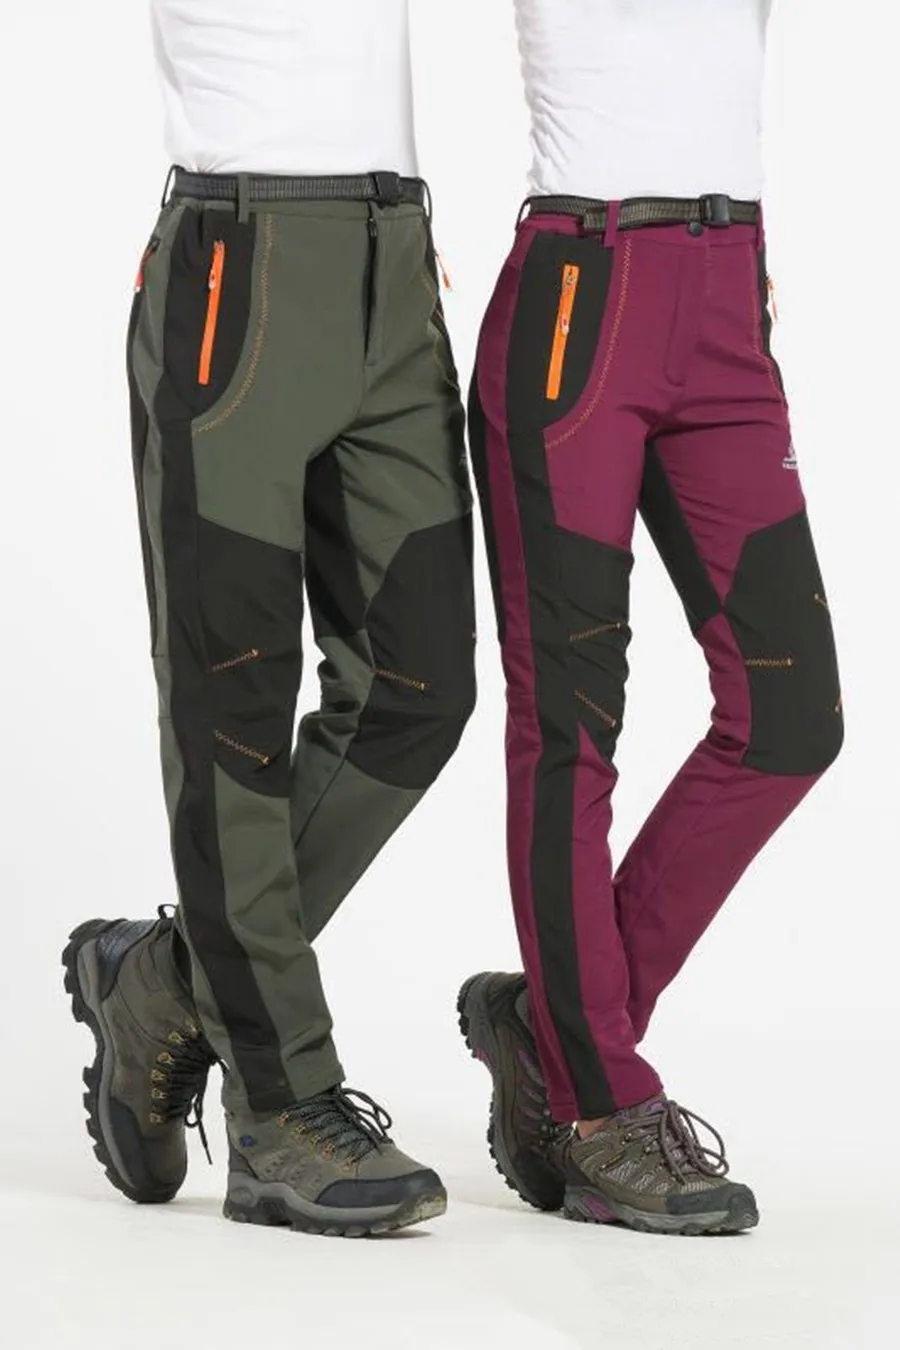 S M L XL XXL 3XL 4XL размера плюс мужские зимние штаны повседневные Модные Штаны флисовые брюки цвет армейский зеленый/серый/оранжевый/винный красный